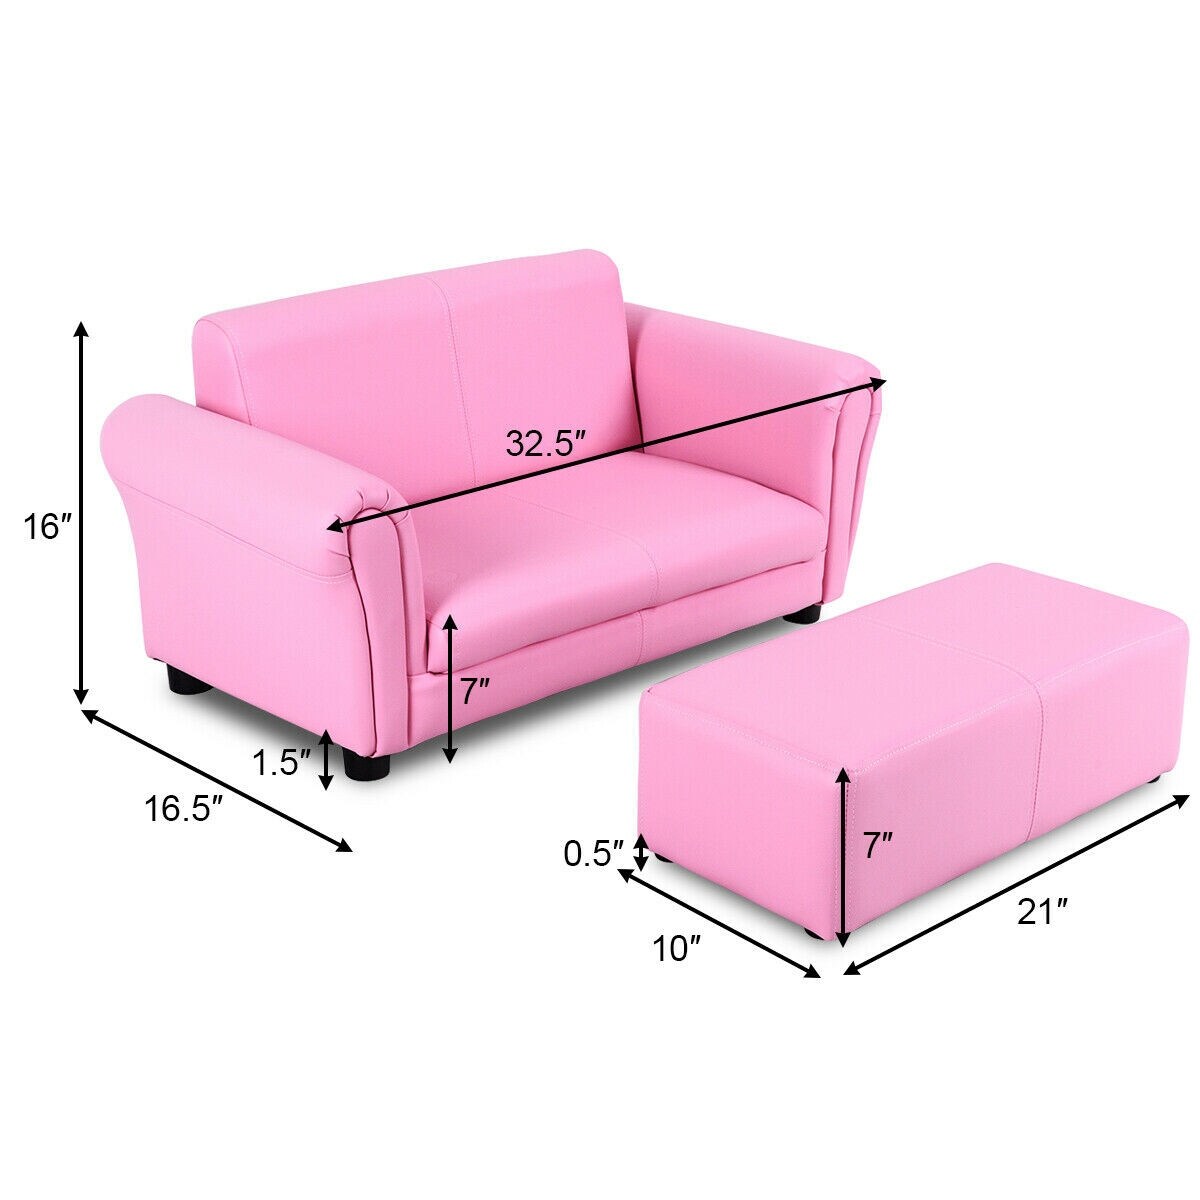 Costway Babyjoy Kids Toy Box Wooden Flip-Top Storage Chest Bench w/ Cushion Safety Hinge Pink